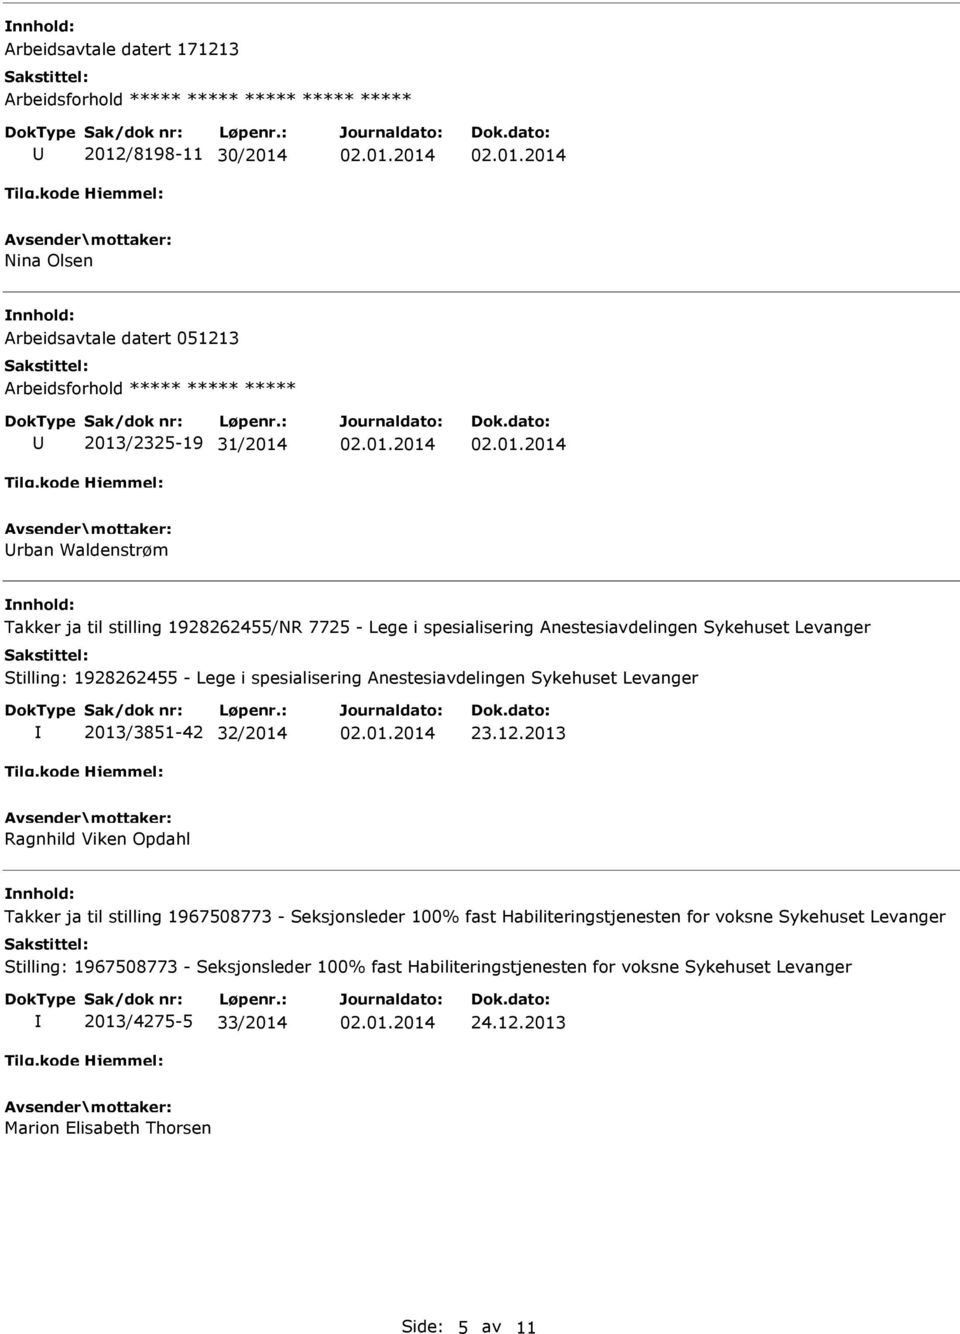 Anestesiavdelingen Sykehuset Levanger 2013/3851-42 32/2014 23.12.